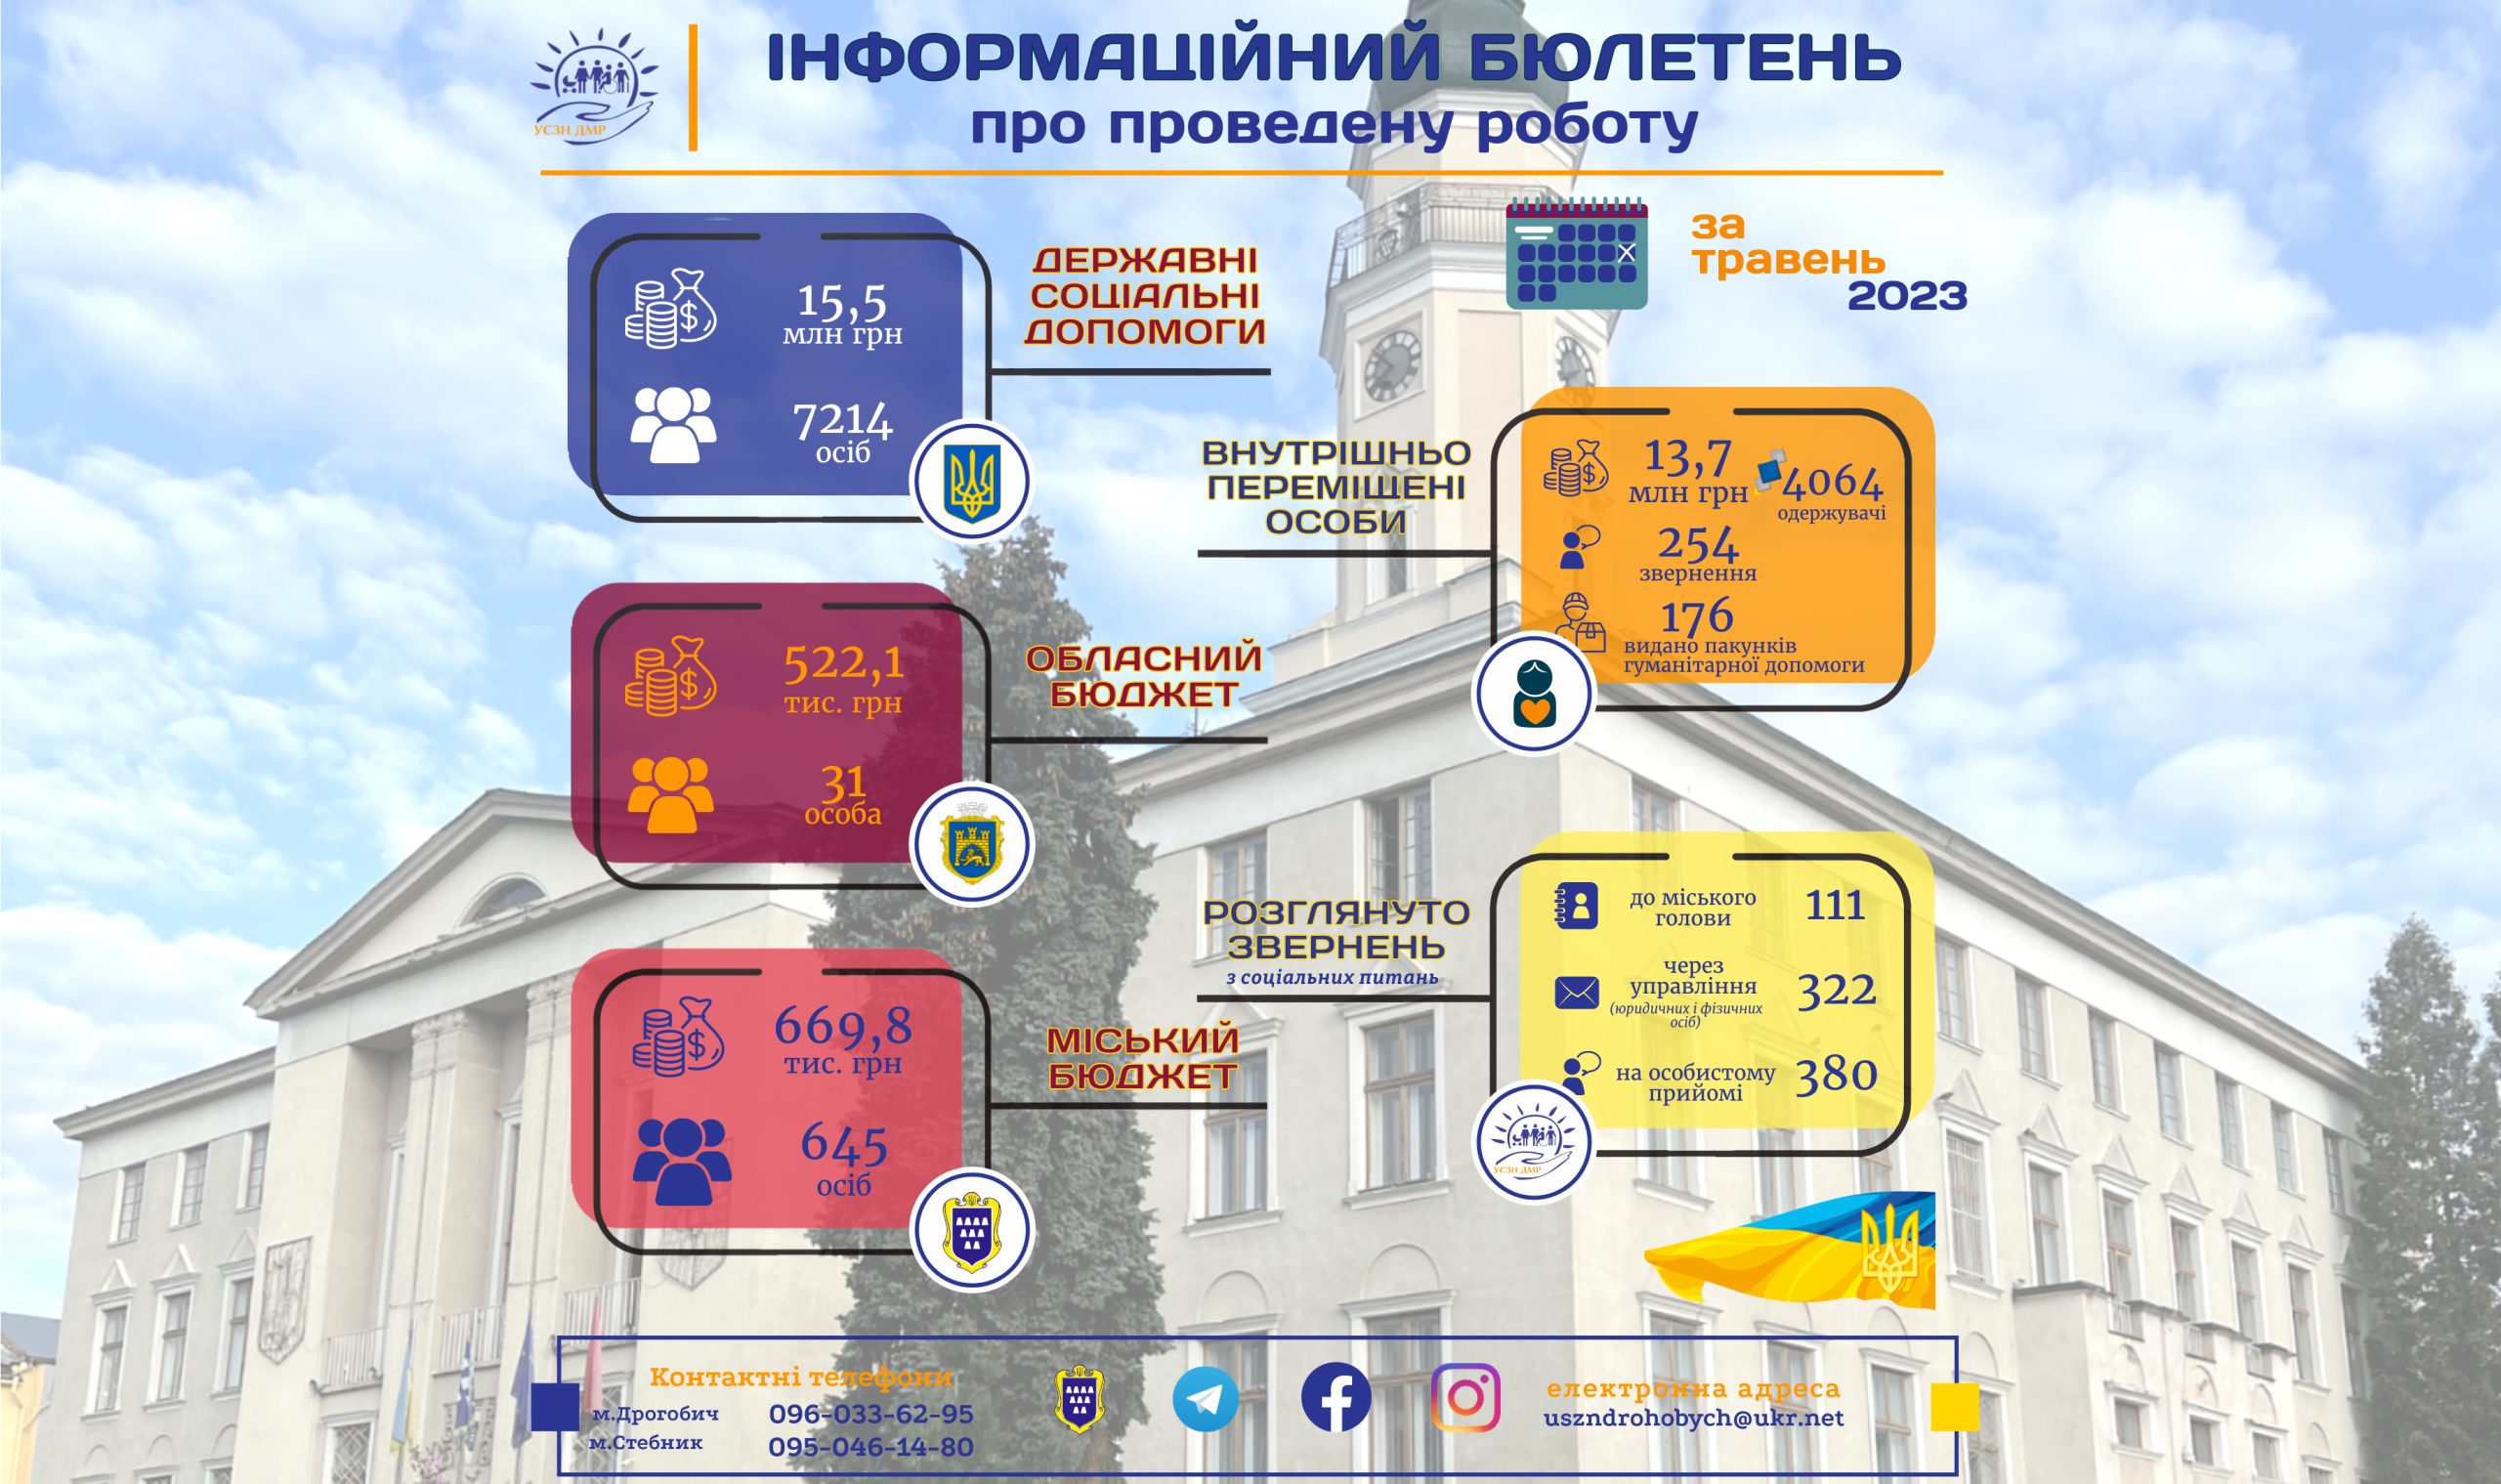 Інформаційний бюлетень про проведену роботу управління соціального захисту населення Дрогобицької міської ради за травень 2023р.